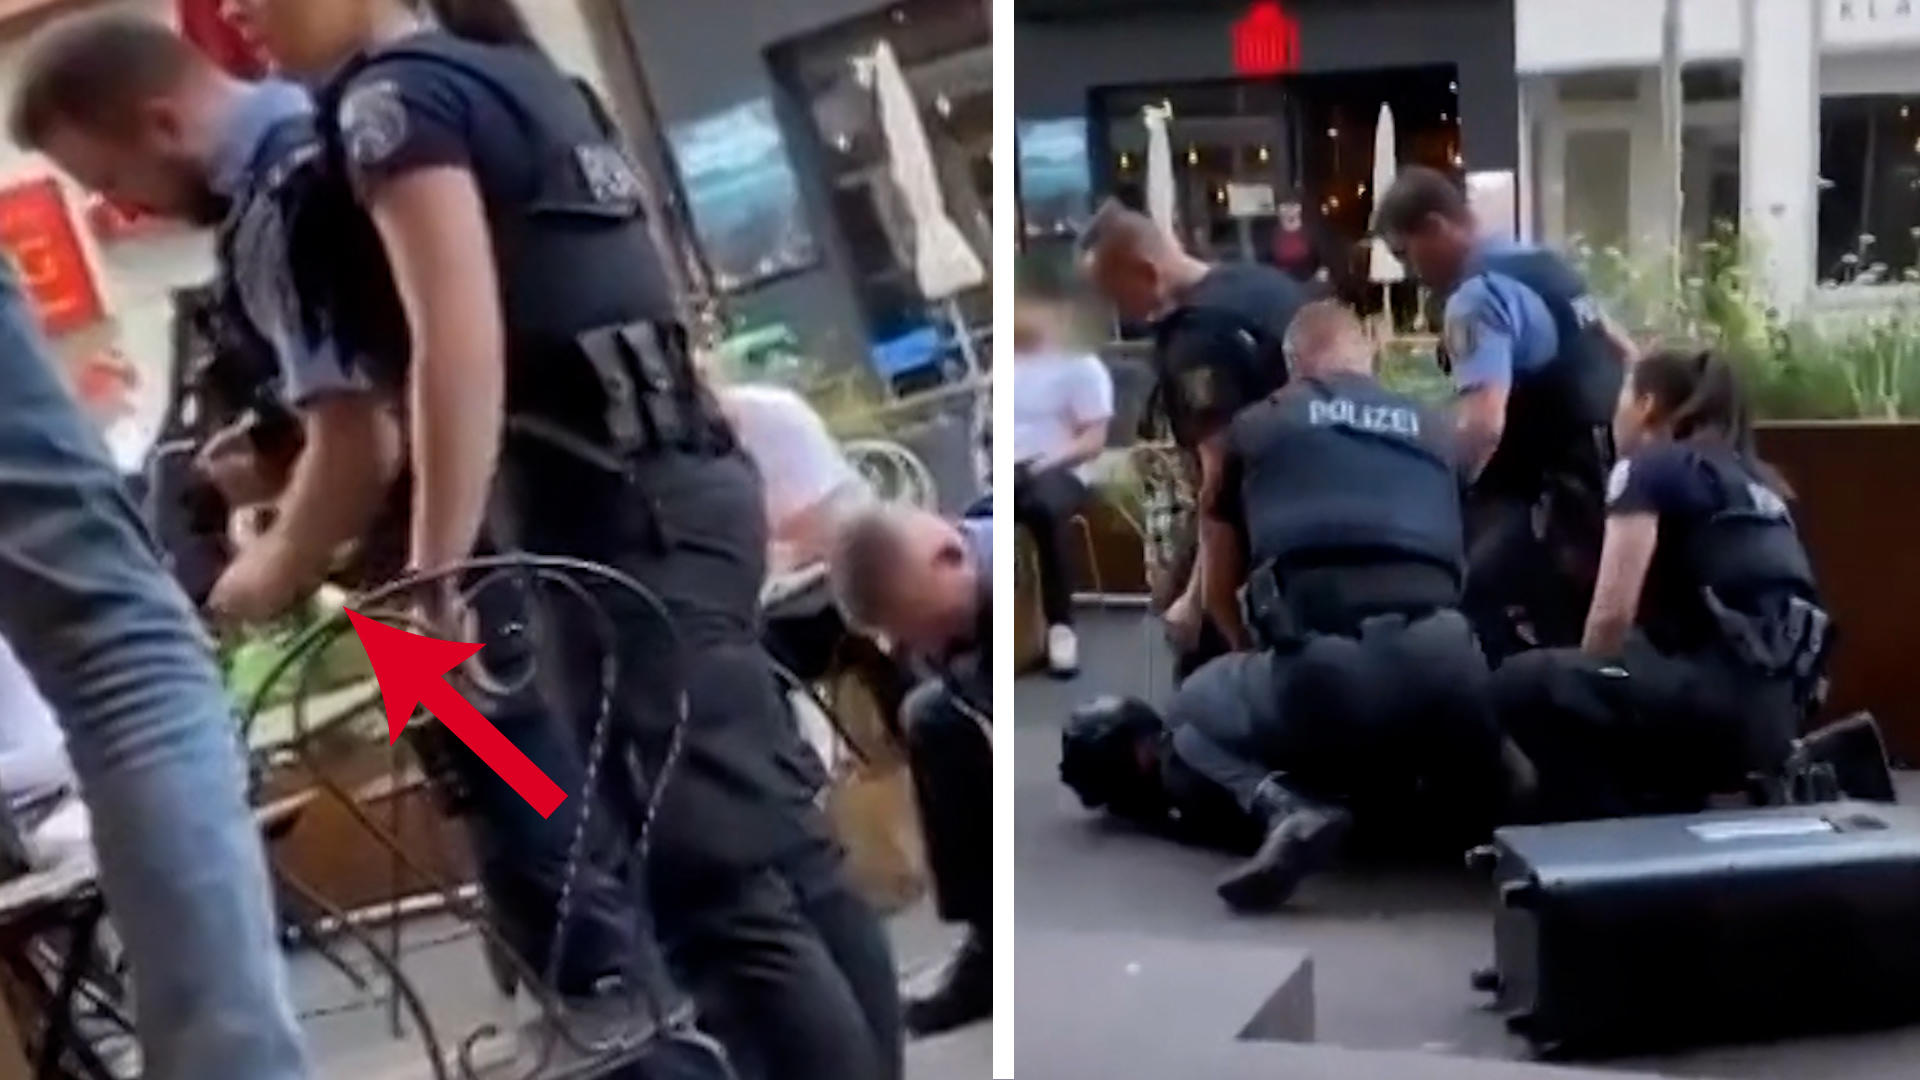 Polizei nimmt Stripper fest - Grund ist "zum Schießen" Verhaftet wegen sexy?!